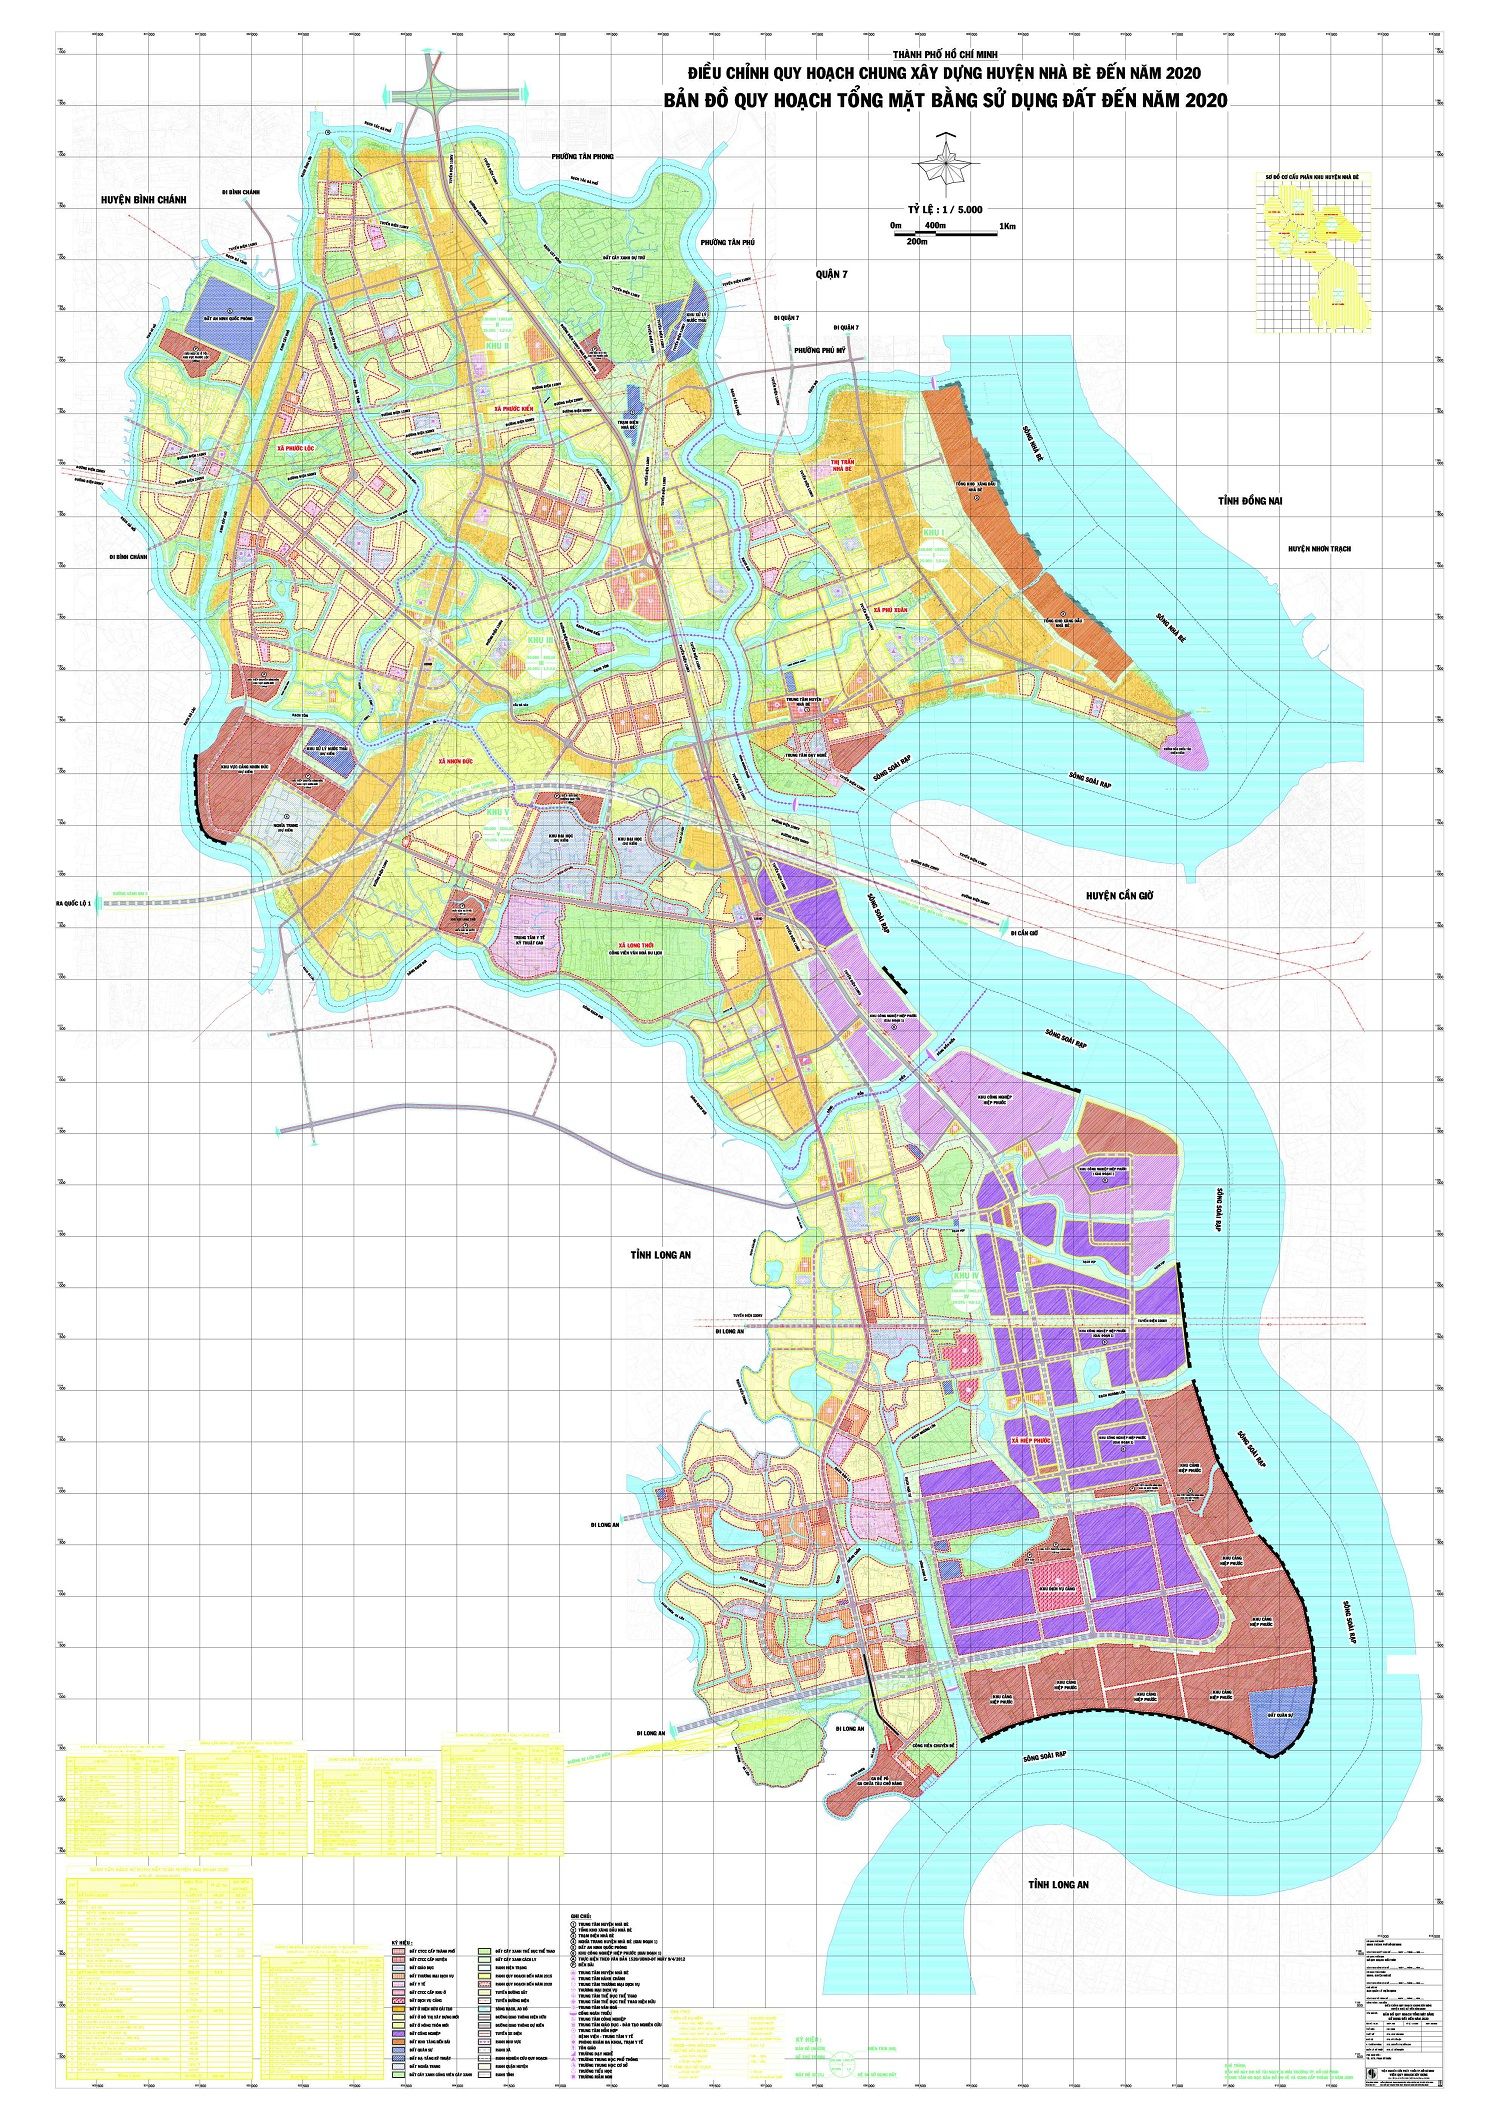 Bản đồ quy hoạch huyện Nhà Bè thành phố HCM đến năm 2020